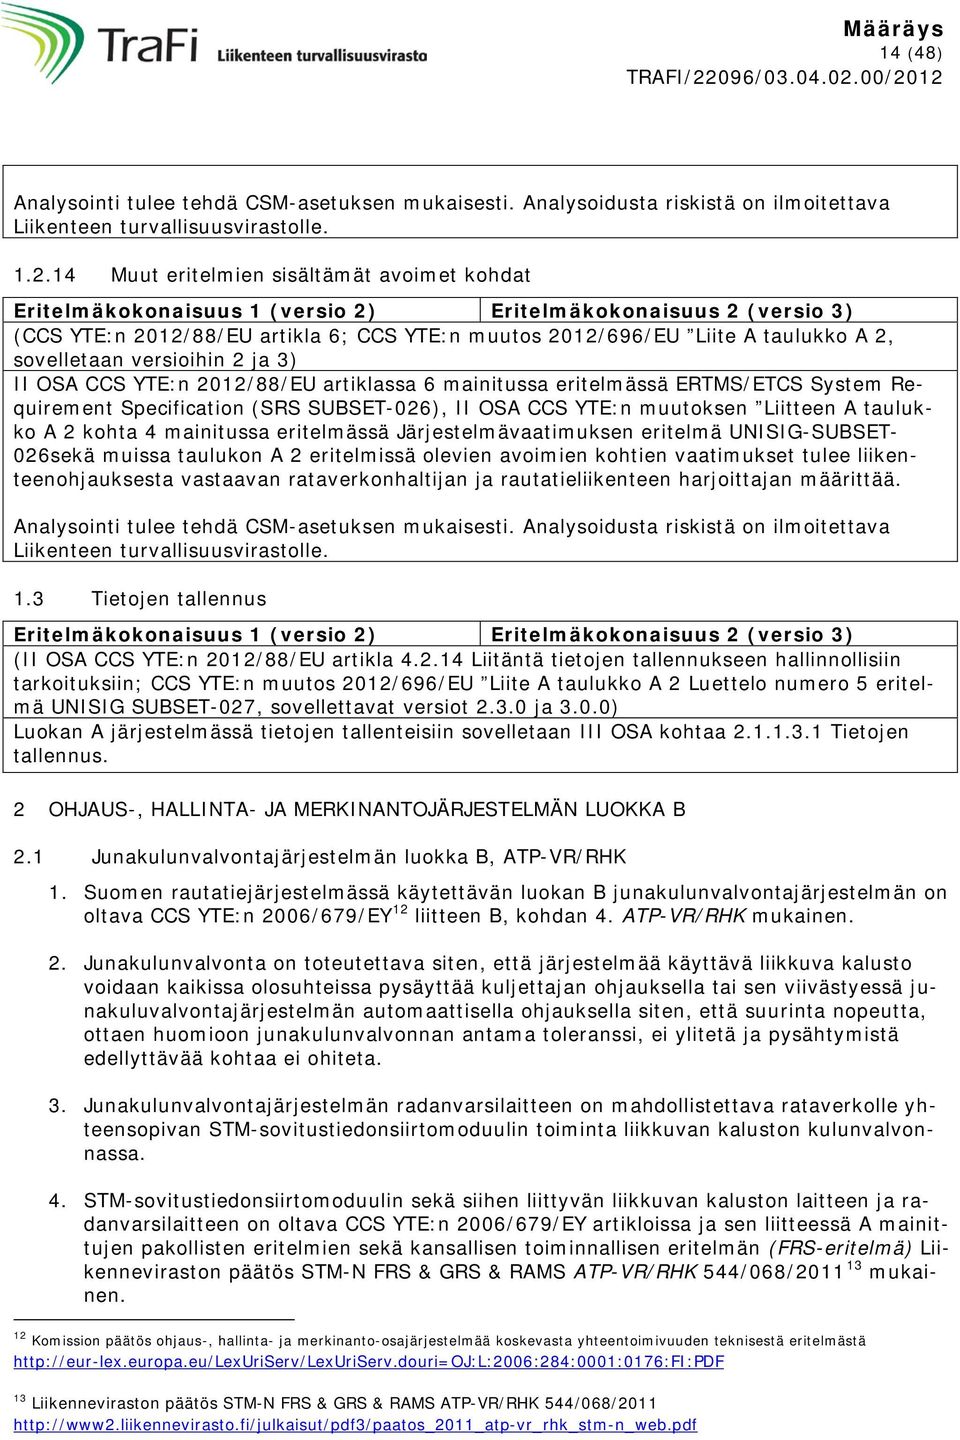 sovelletaan versioihin 2 ja 3) II OSA CCS YTE:n 2012/88/EU artiklassa 6 mainitussa eritelmässä ERTMS/ETCS System Requirement Specification (SRS SUBSET-026), II OSA CCS YTE:n muutoksen Liitteen A